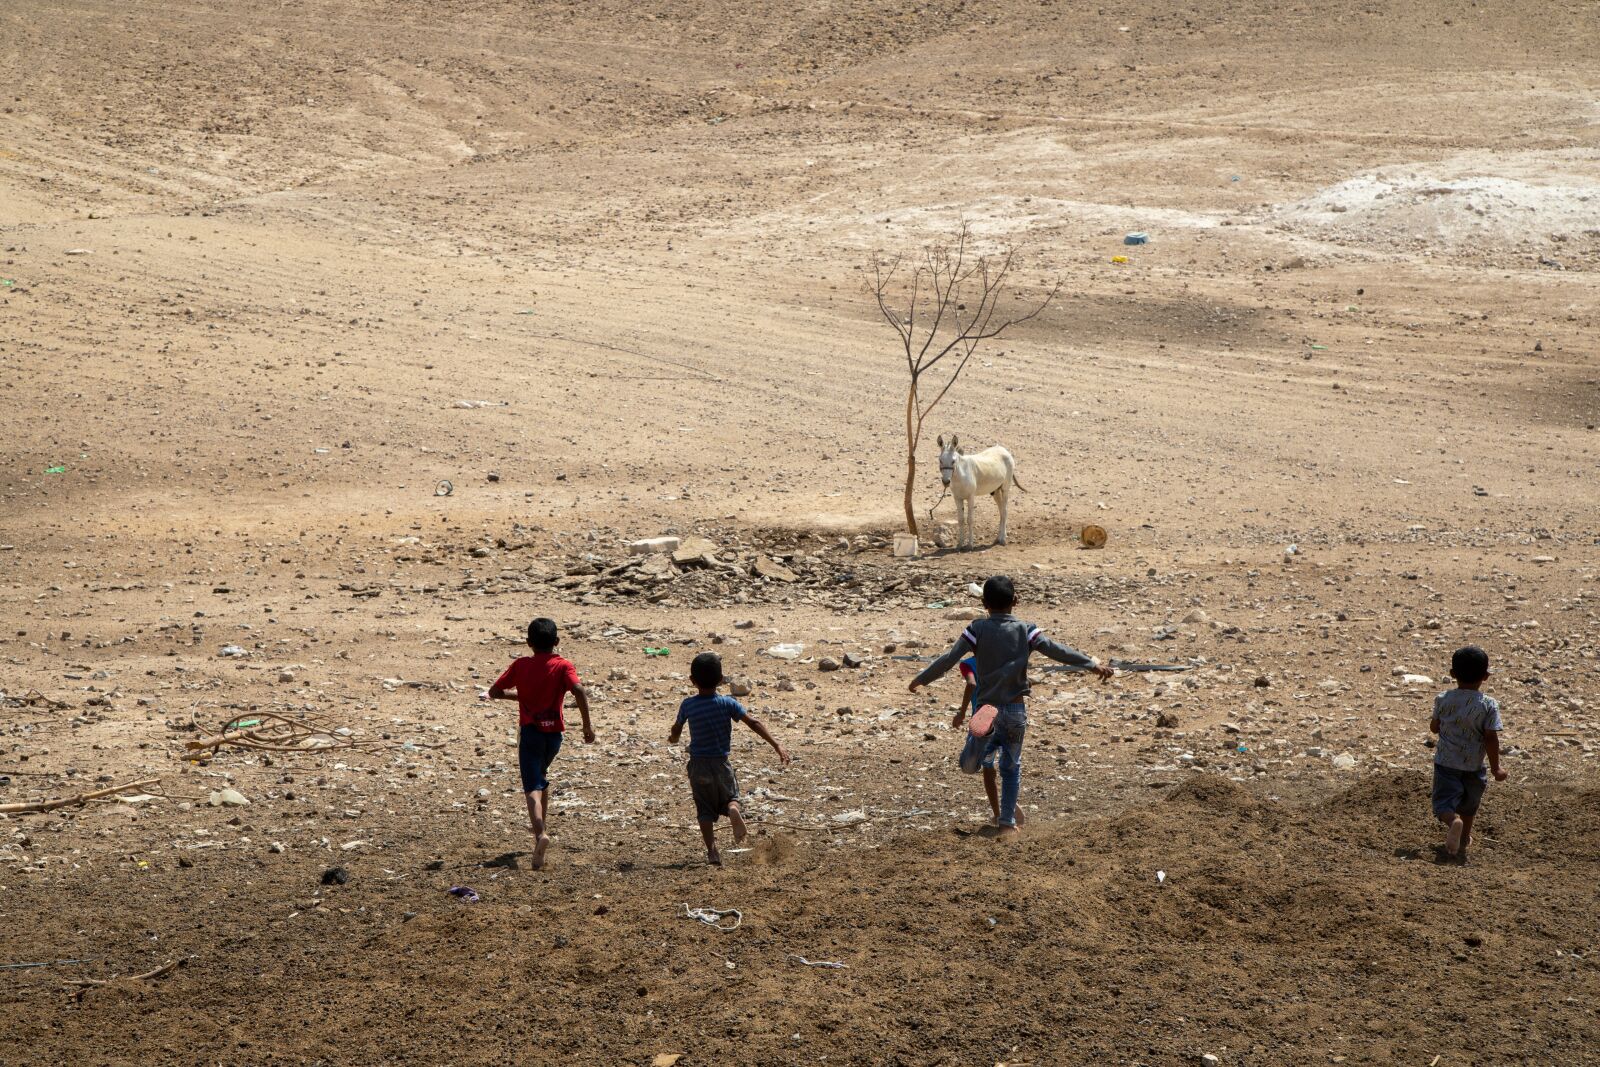 Canon EOS 5D Mark IV sample photo. Nomads, nomadic lifestyle, bedouin photography